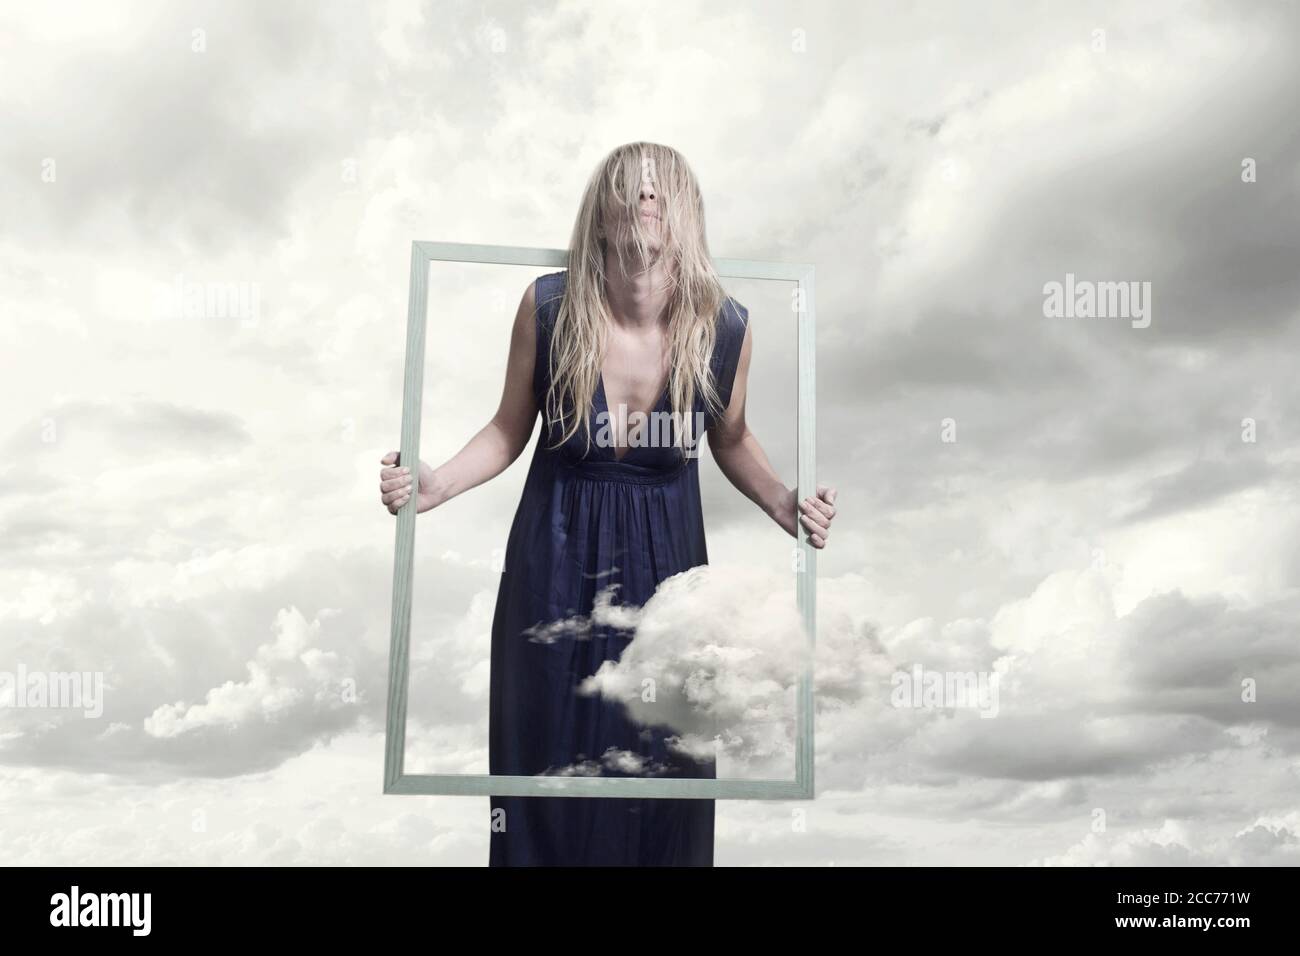 Surreales Bild einer Frau, die versucht, sich zu befreien Und Lauf weg von dem Rahmen, der sie enthält Stockfoto